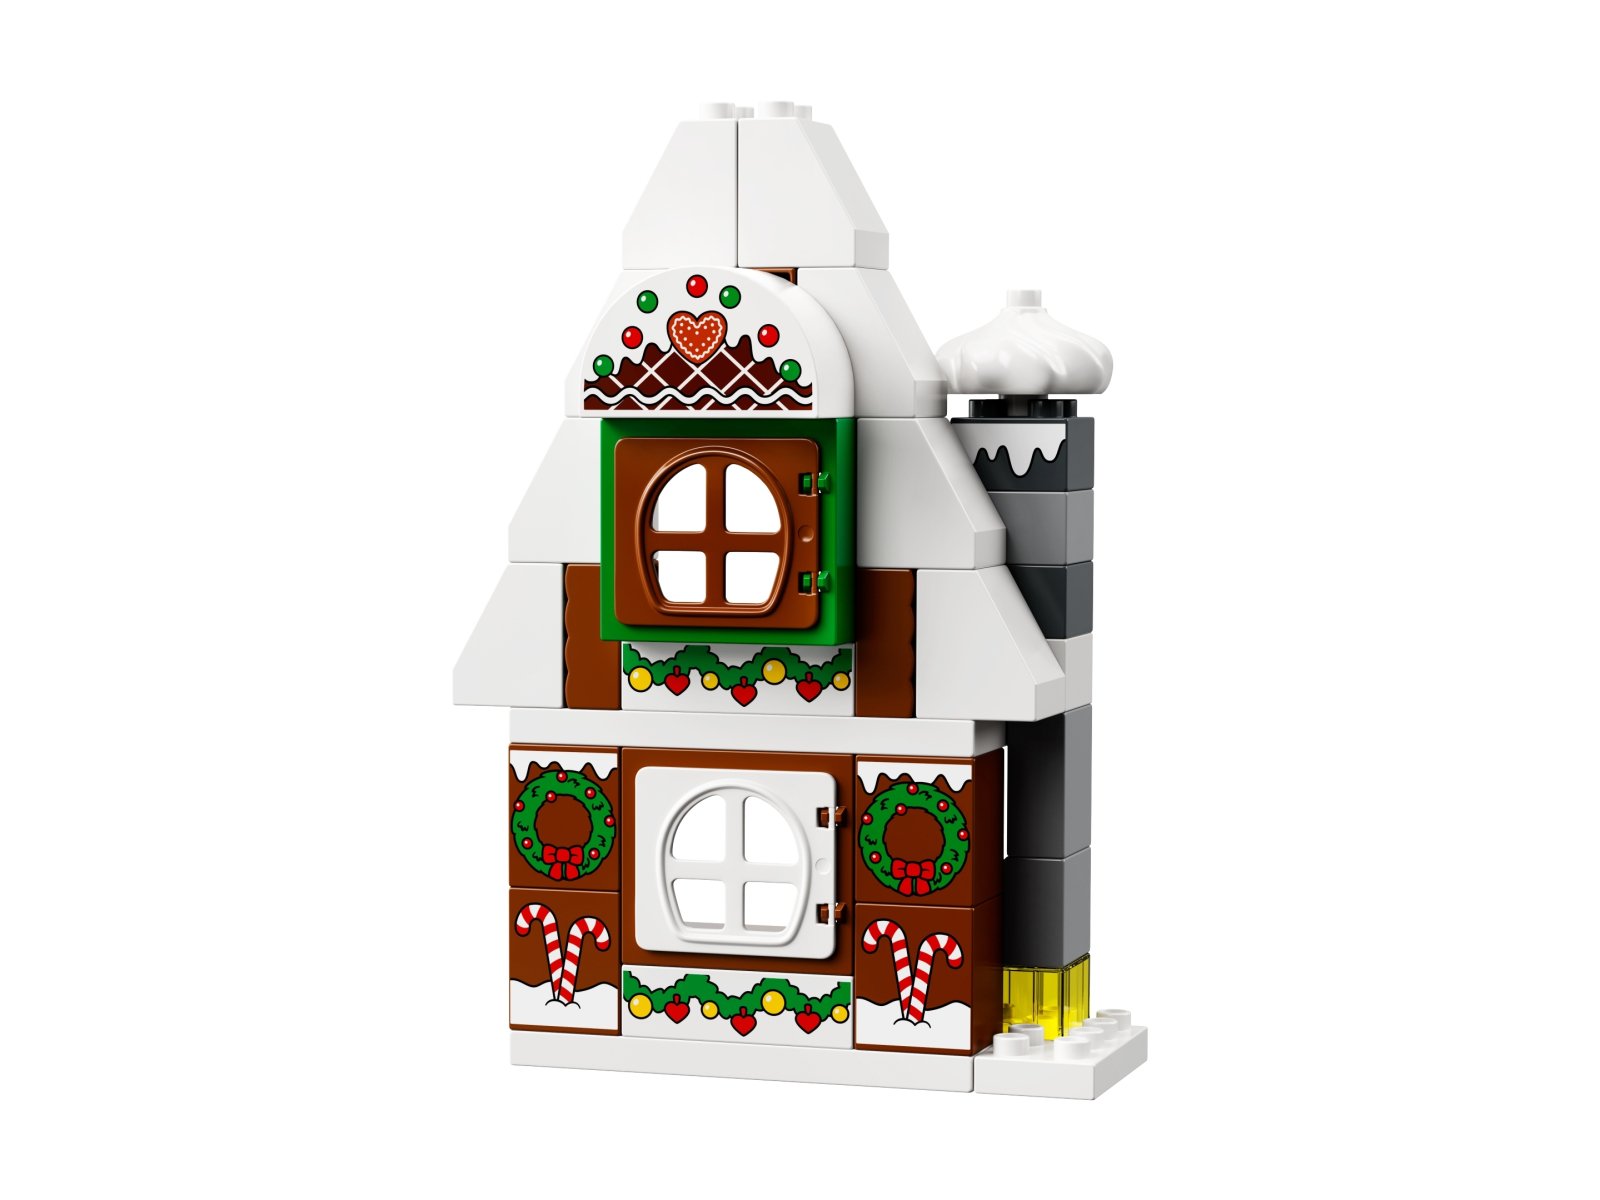 LEGO Duplo 10976 Piernikowy domek Świętego Mikołaja